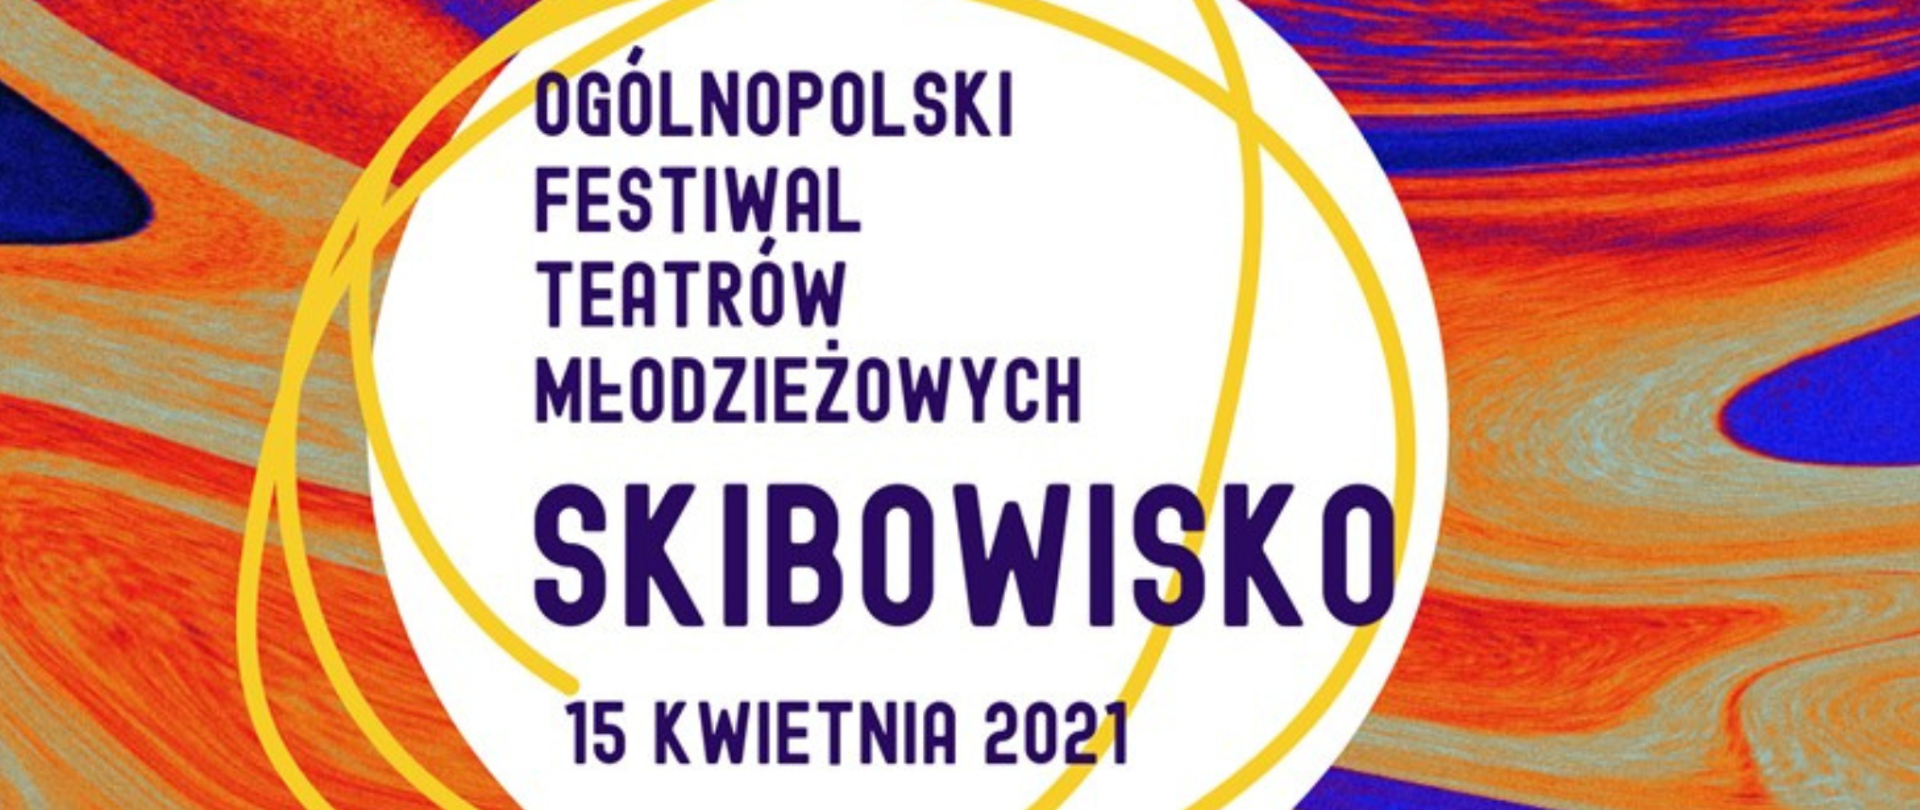 grafika, abstrakcyjnie rozmazane plamy pomarańczowe, żółte i fioletowe, w białym kole napis ogólnopolski festiwal teatrów młodzieżowych skibowisko 15 kwietnia 2021